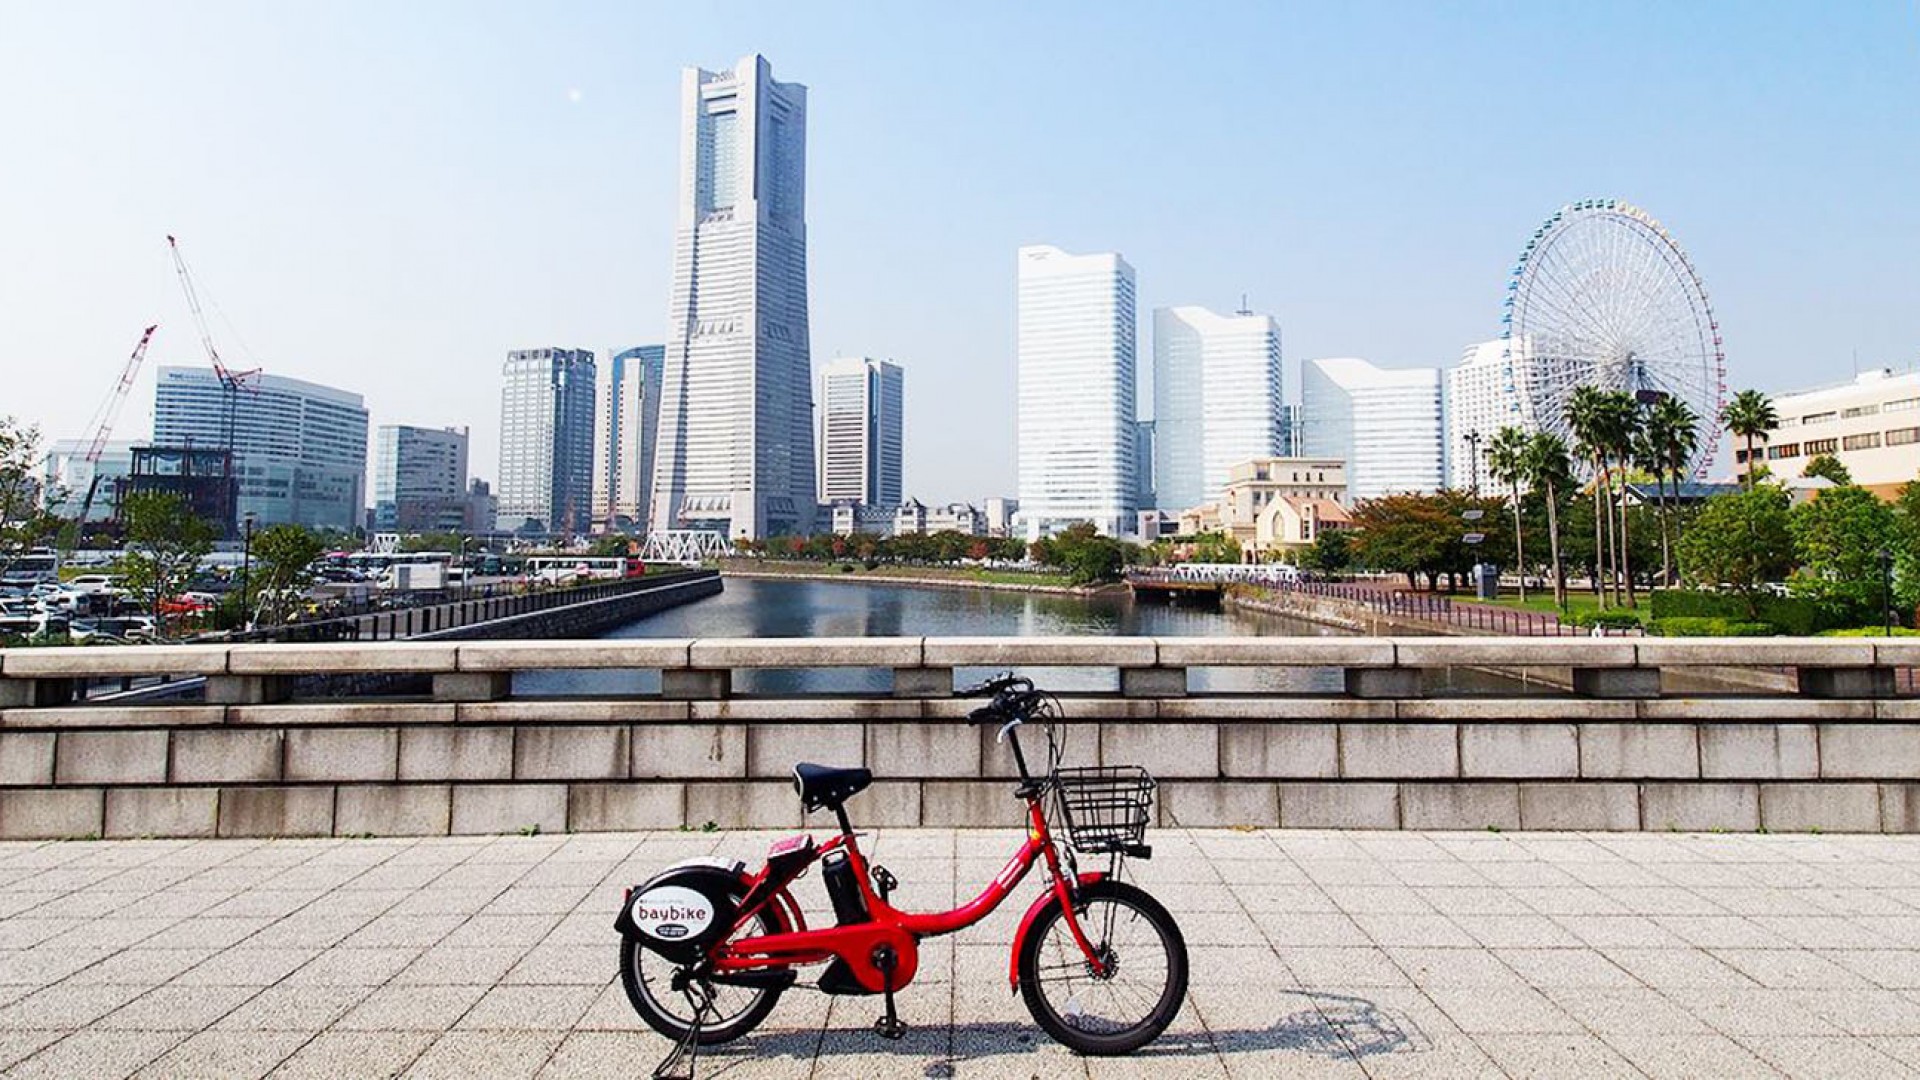 Ngắm cảnh ở Yokohama bằng Baybike (xe đạp điện)